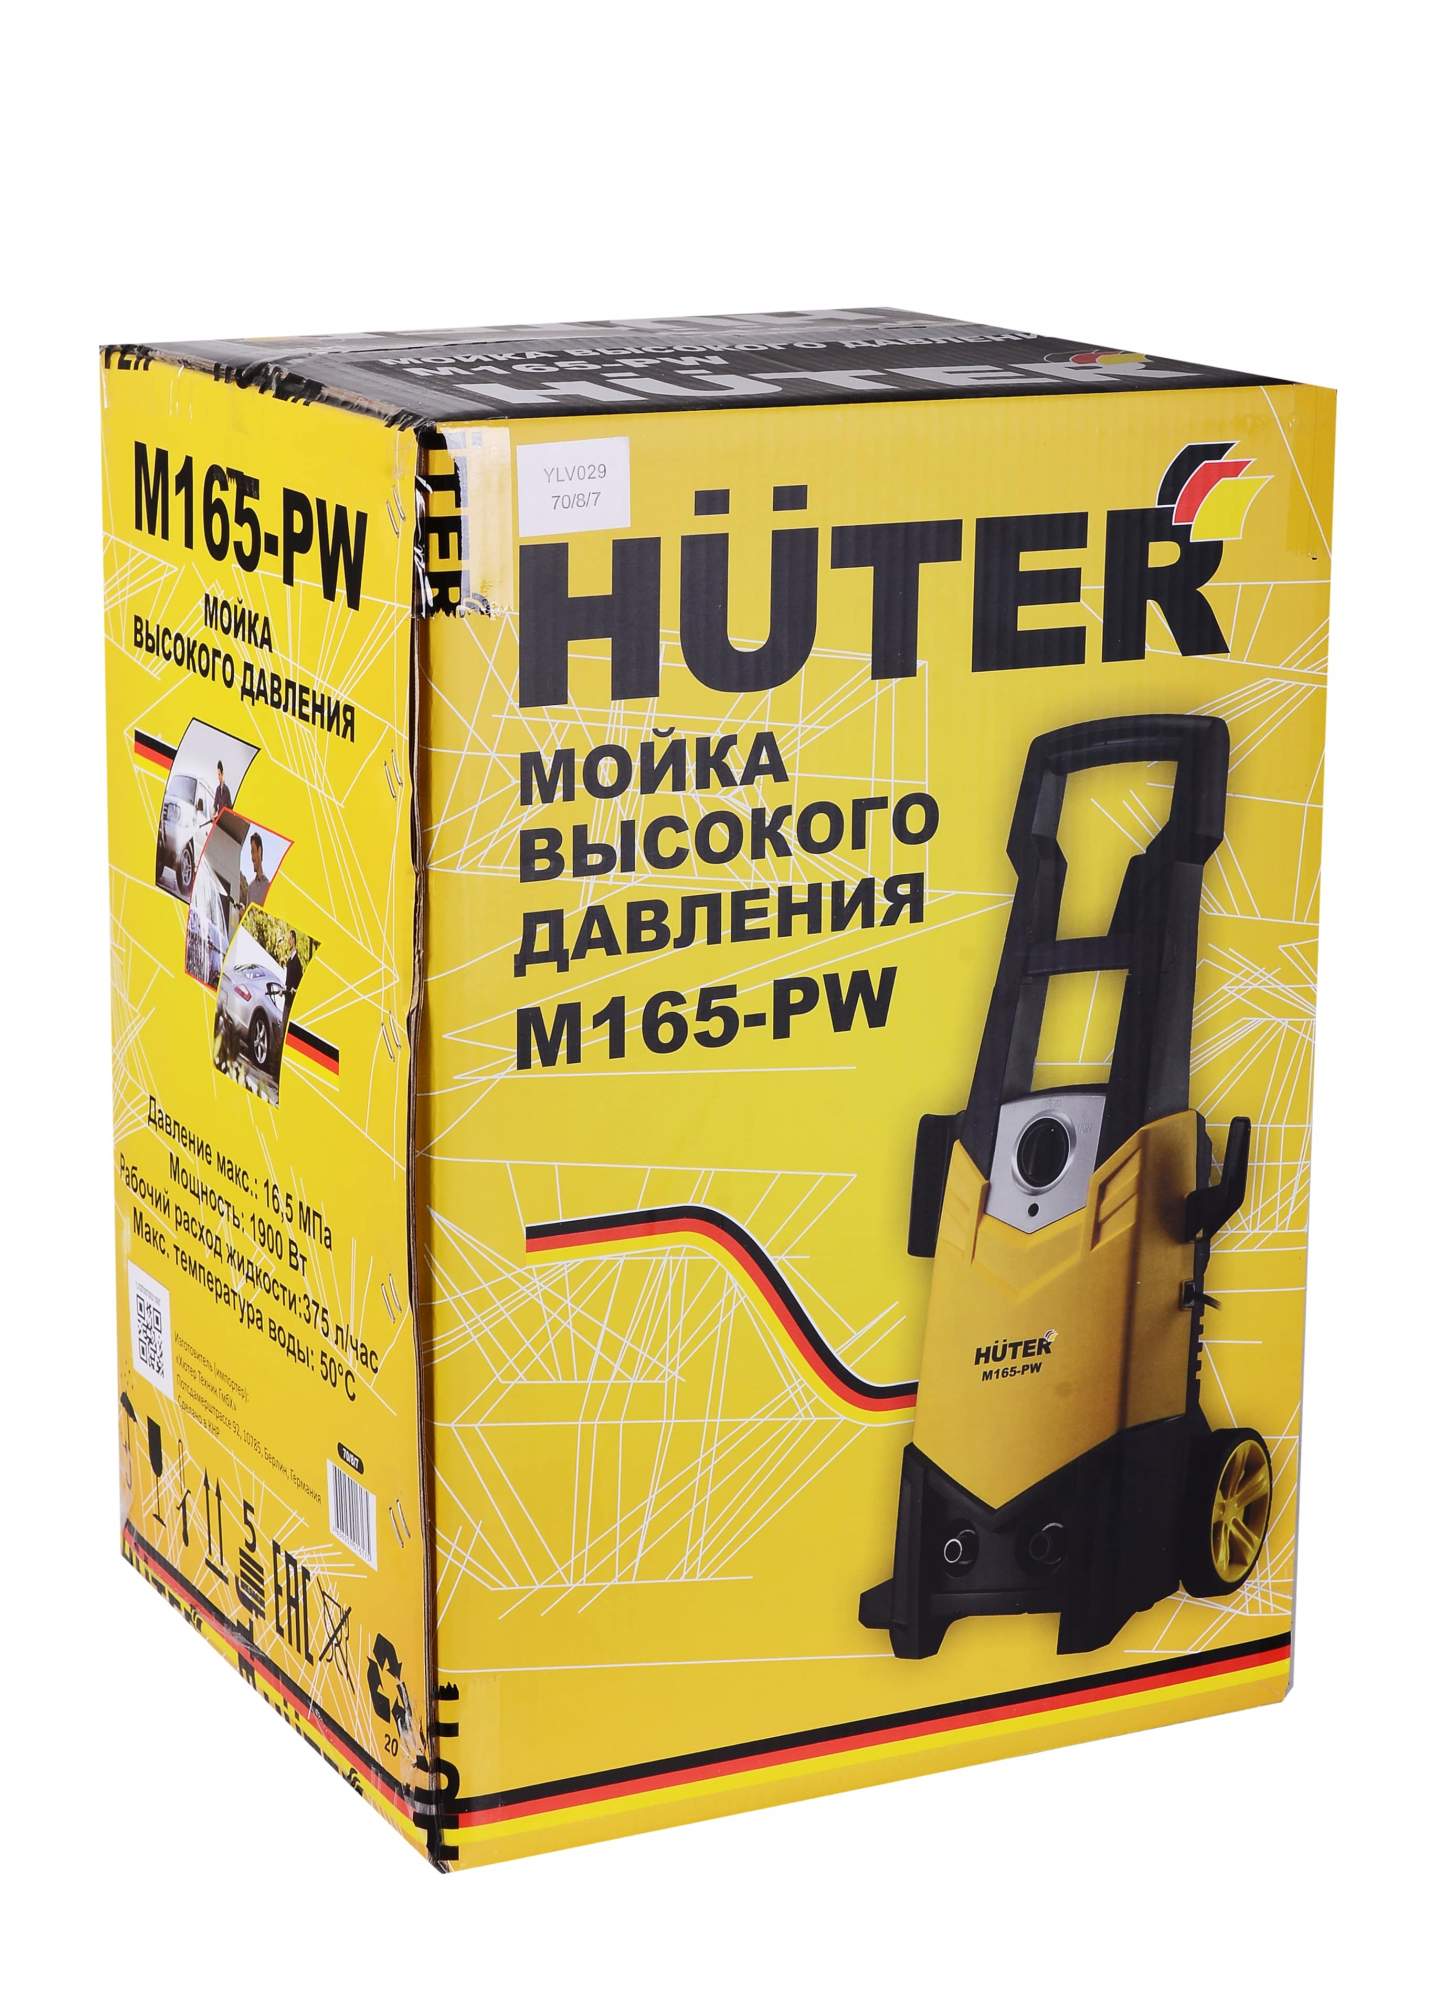 Электрическая мойка высокого давления HUTER M165-PW 70/8/7 -  в .